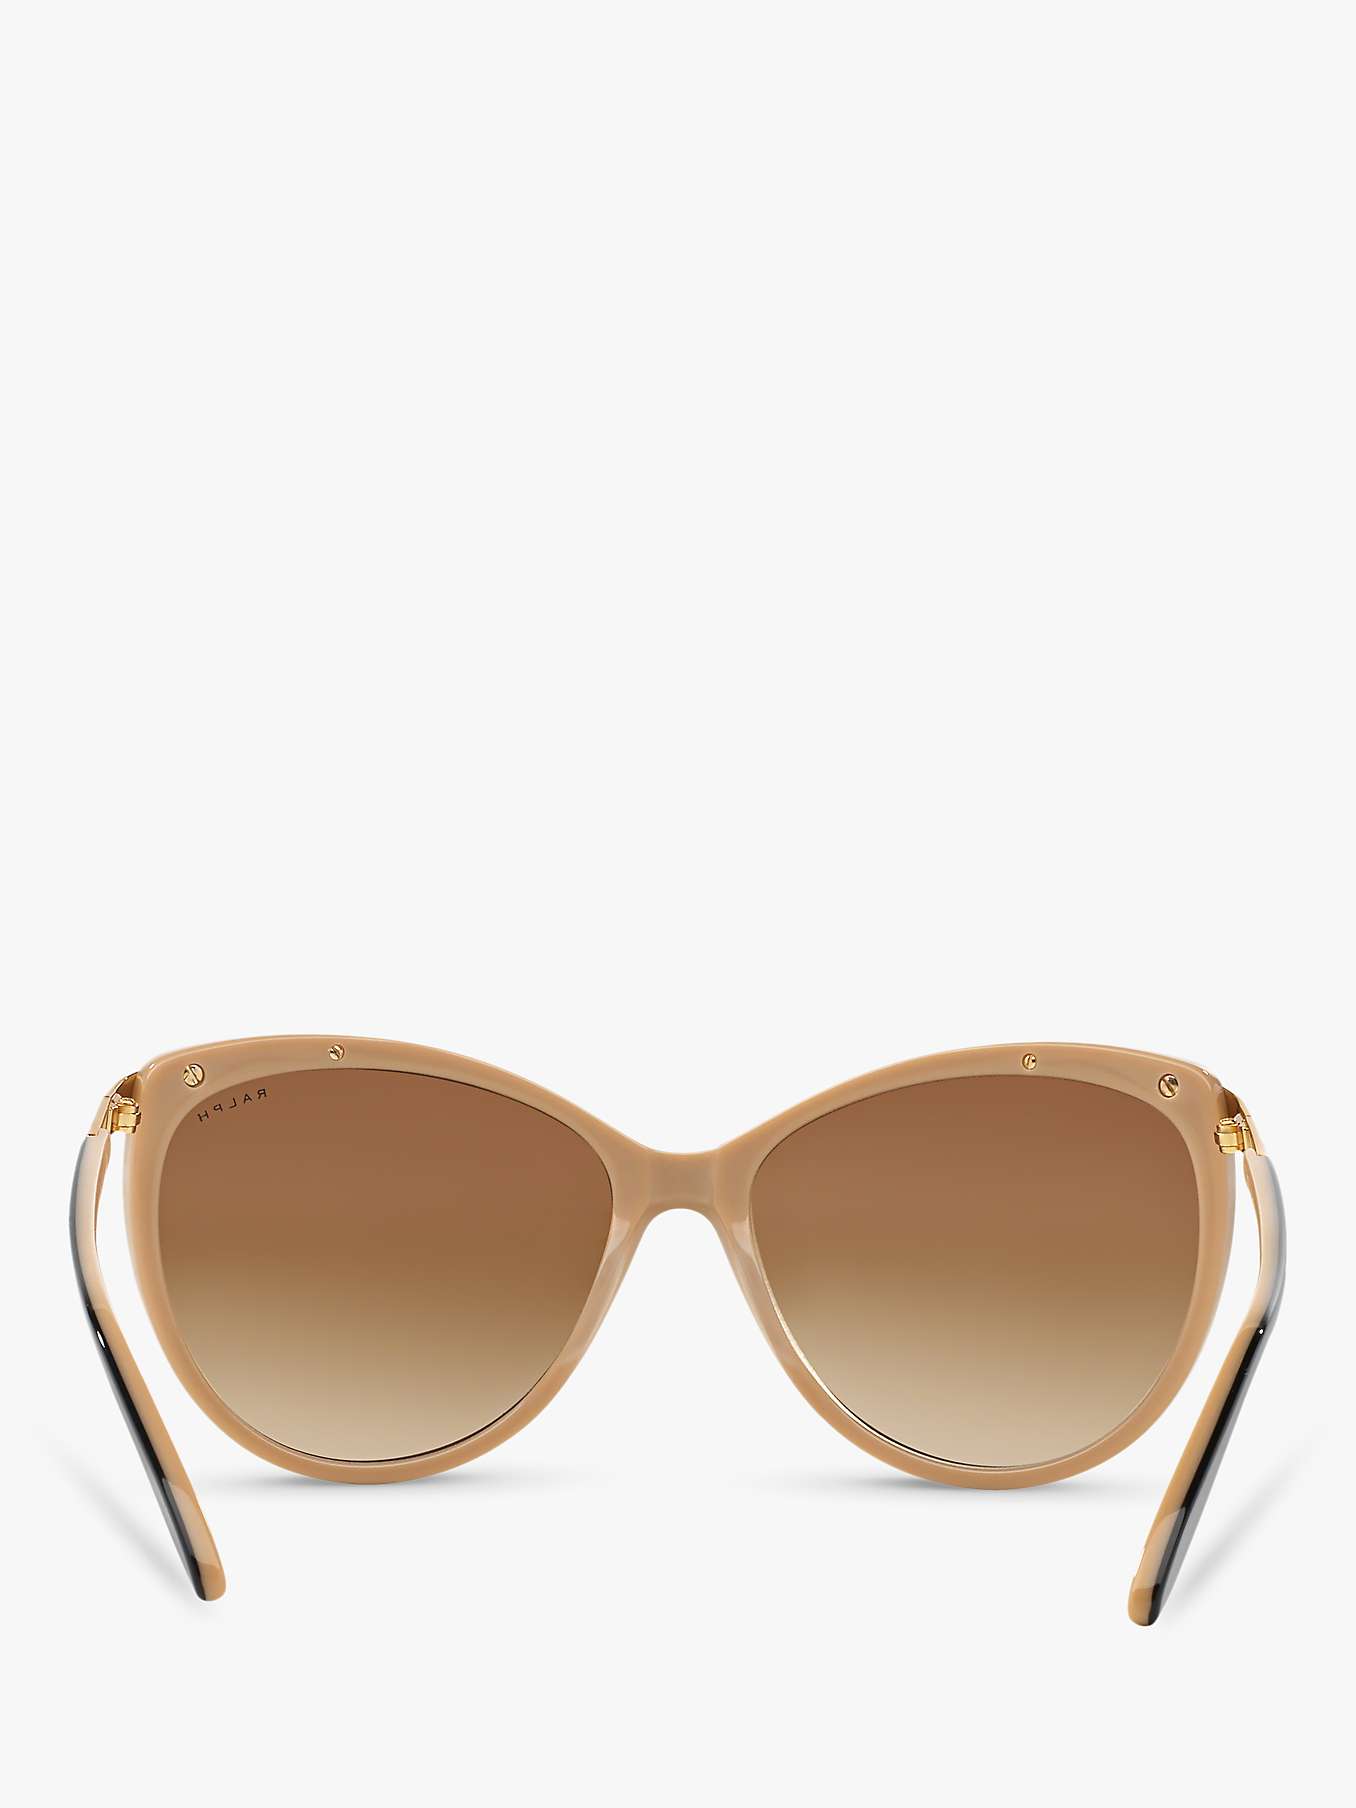 Buy Ralph Lauren RA5150 Women's Cat's Eye Sunglasses, Black/Brown Gradient Online at johnlewis.com